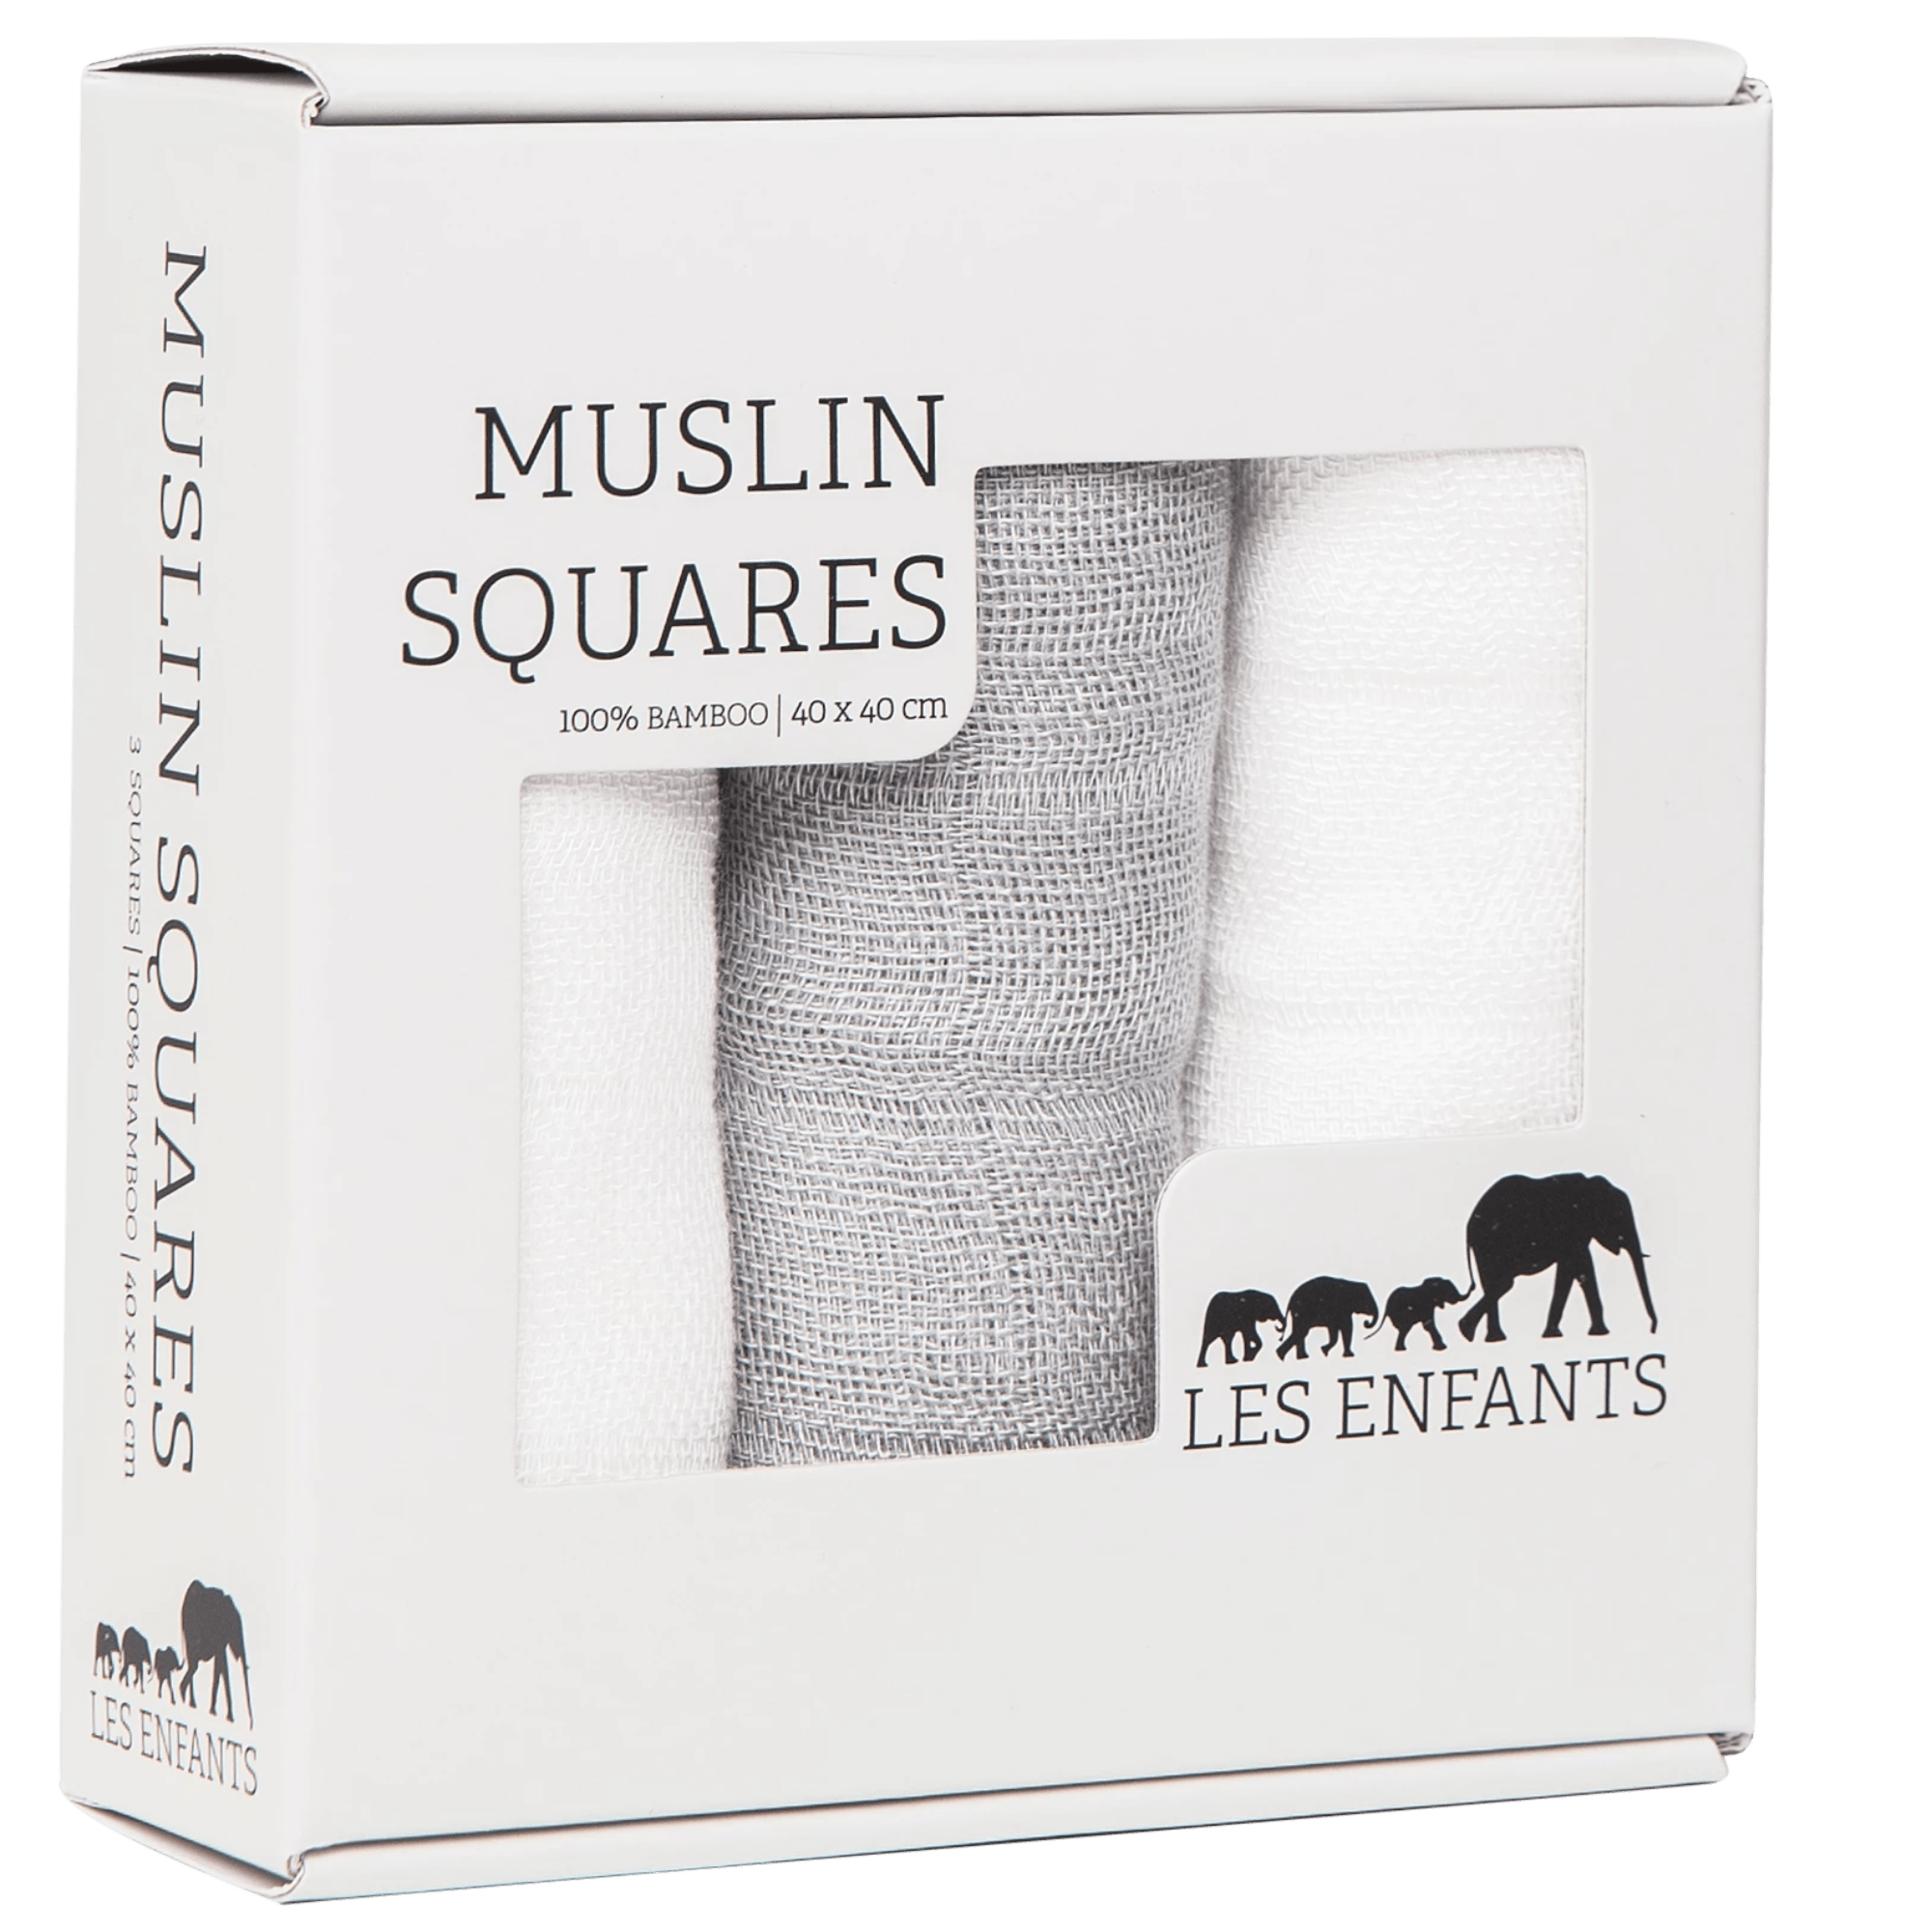 Les Enfants pack of Muslin squares, 2 whites & 1 grey